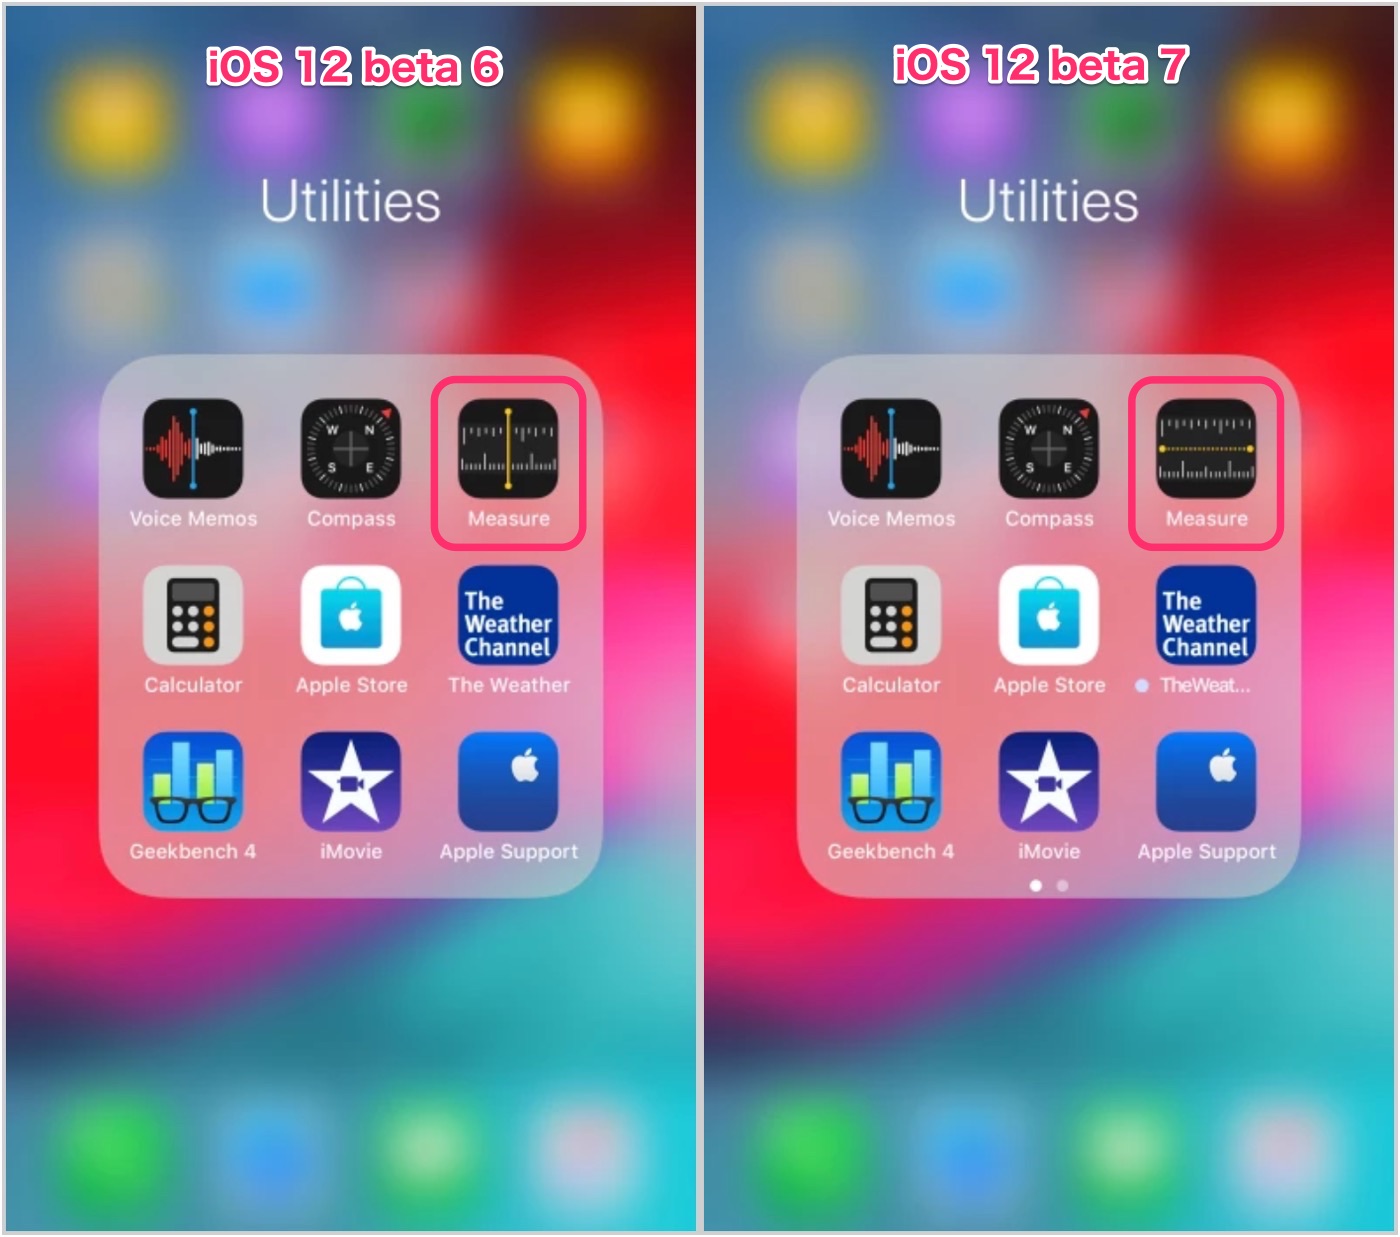 ｢iOS 12 beta 7｣での変更点